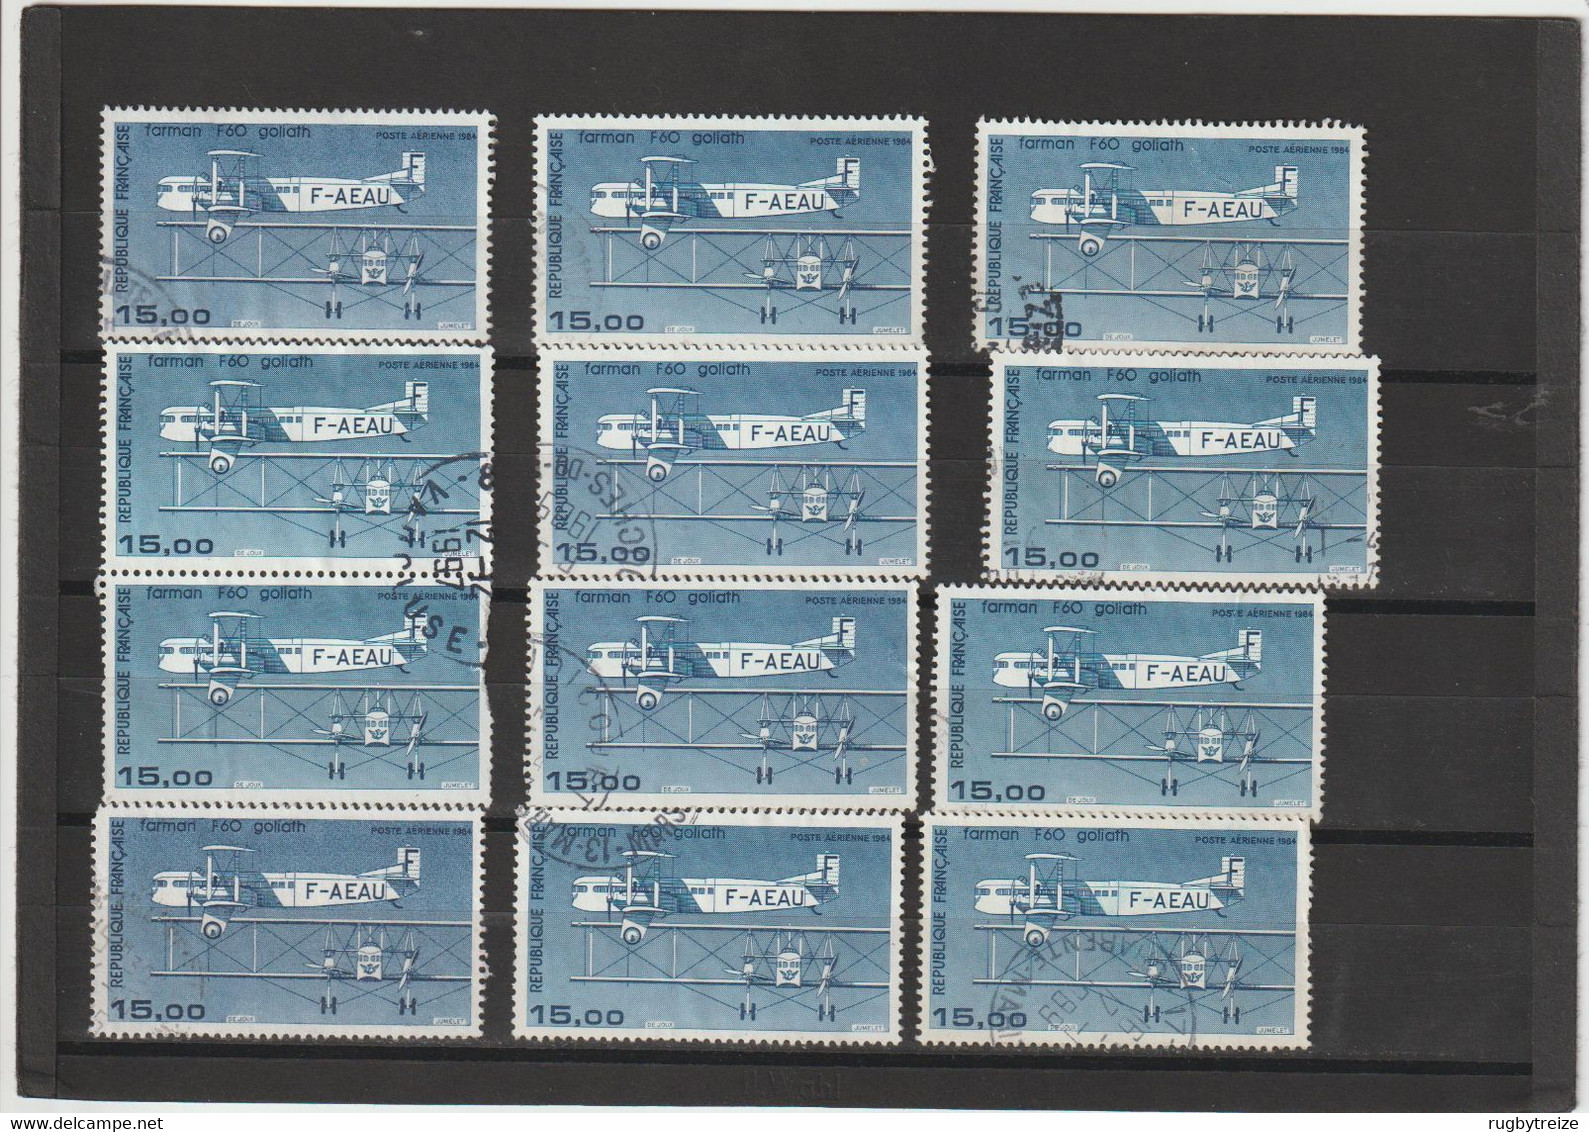 5567 Enorme lot de timbres Poste Aérienne FRANCE Toute époque - Oblitérés